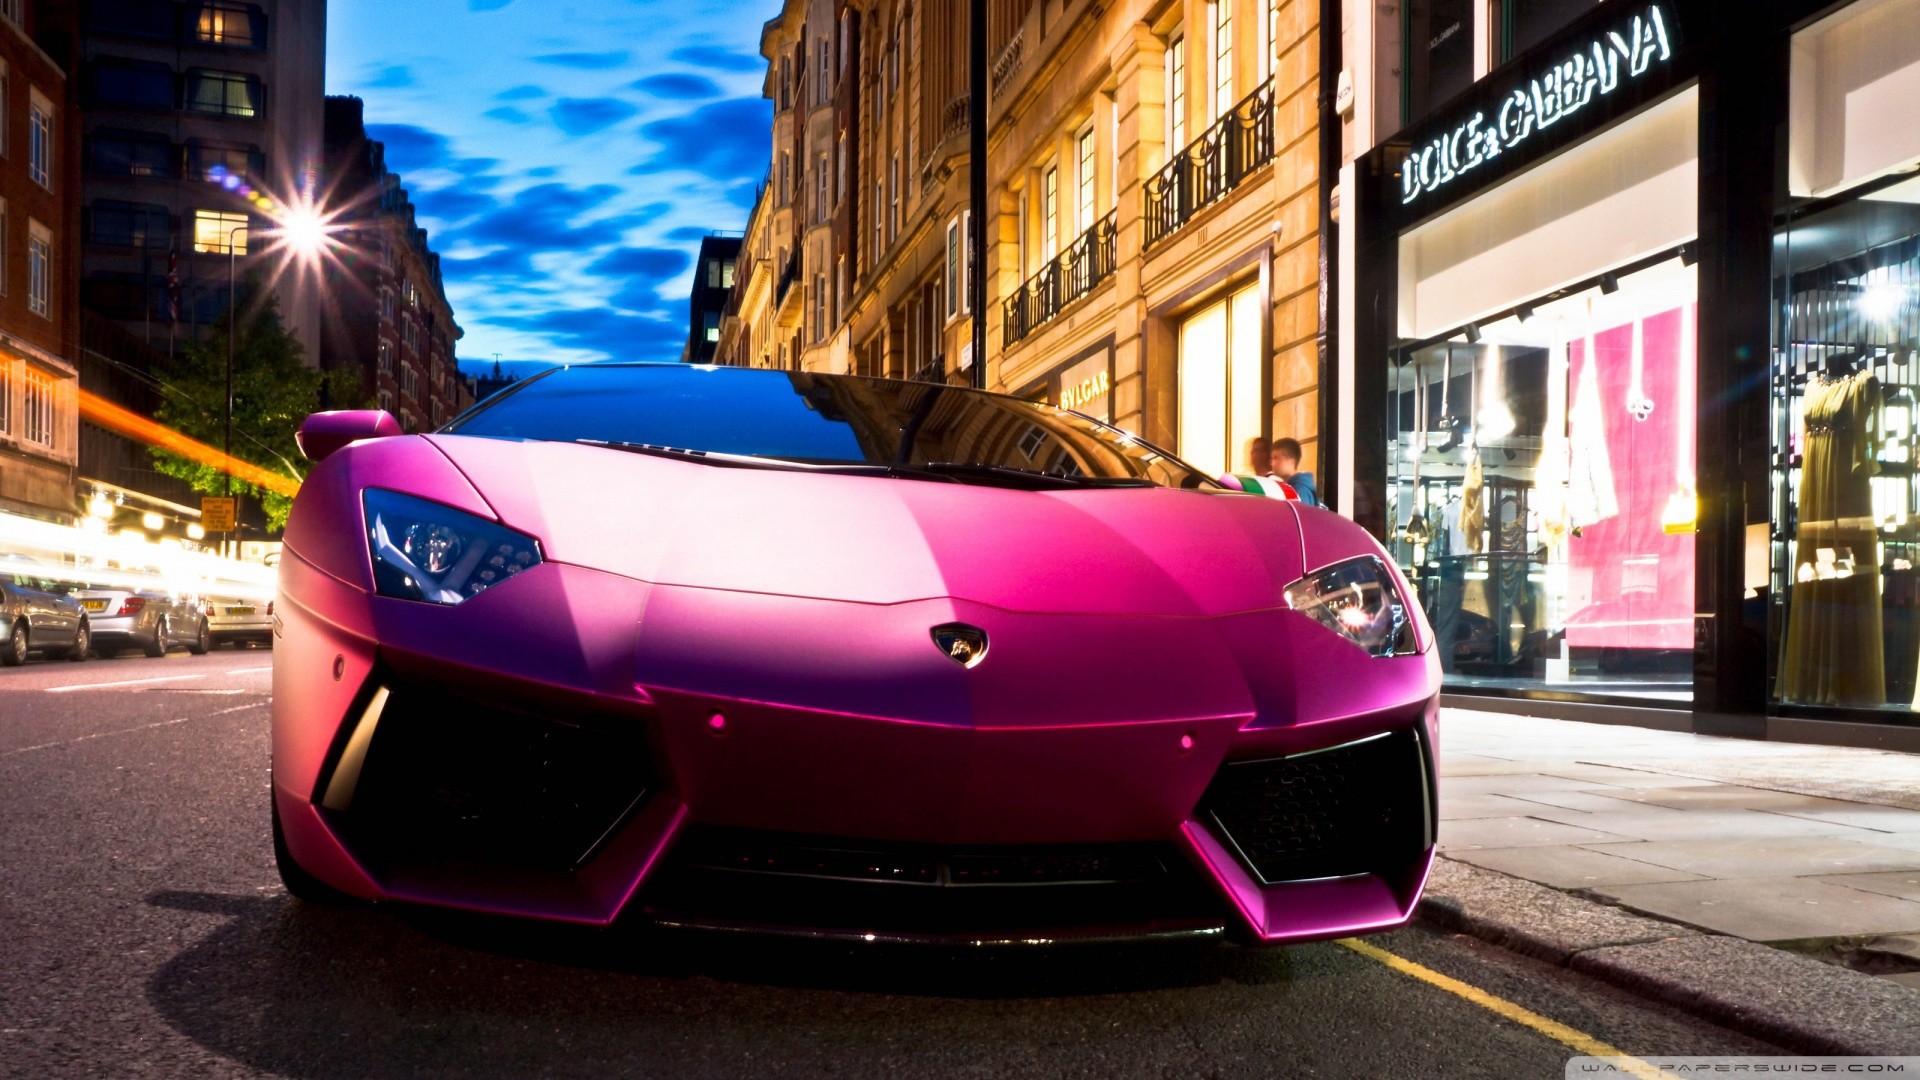 3840x2160, Download Pink Lamborghini 4k Wallpapers - Lamborghini Pink Wallpaper Hd , HD Wallpaper & Backgrounds